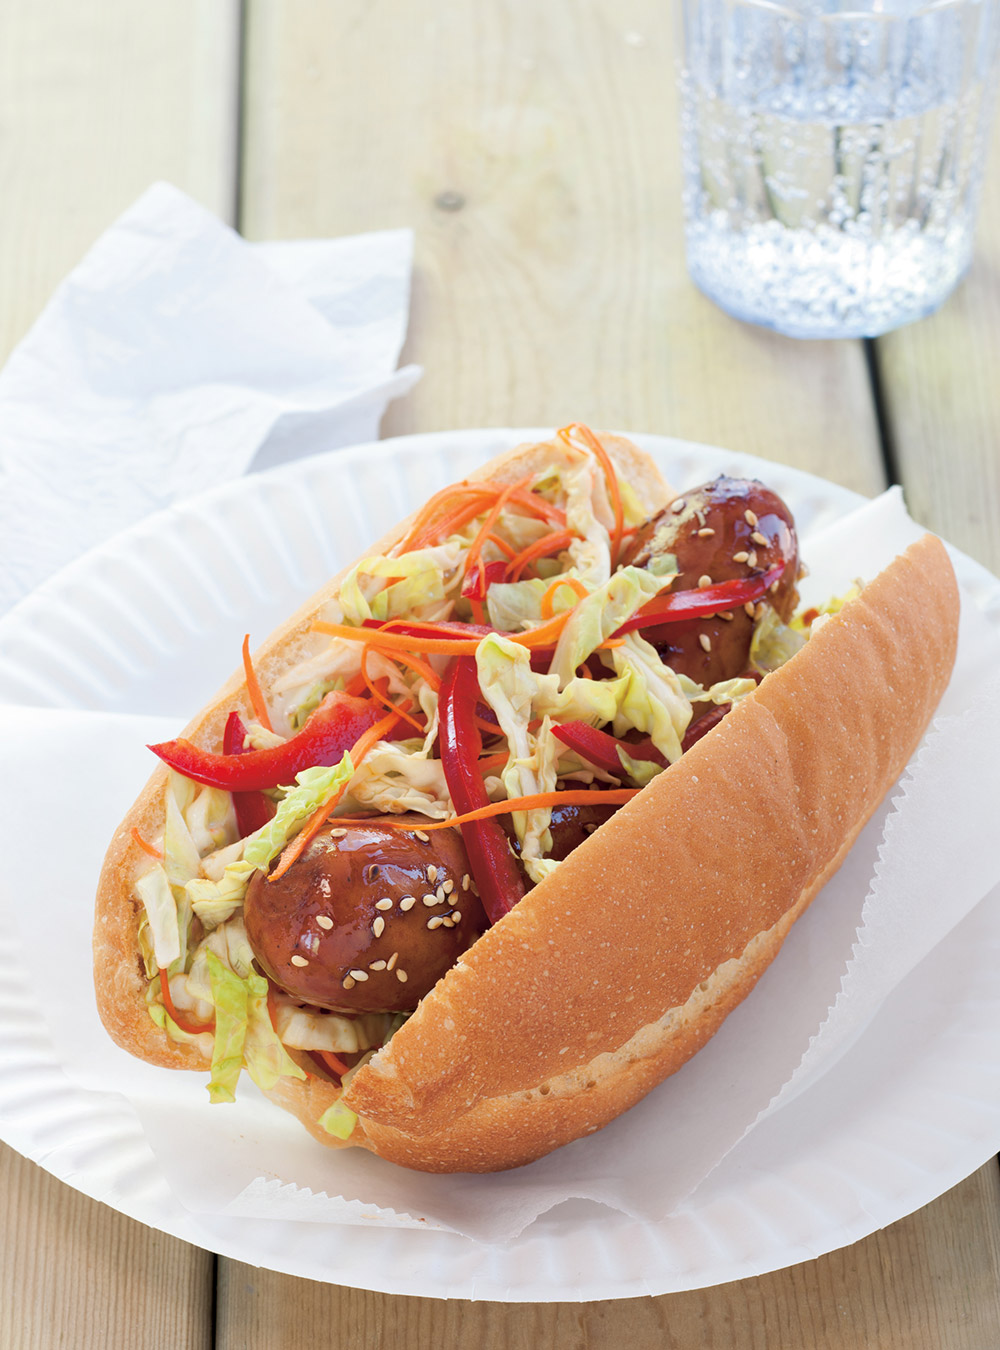 Hot-dog Avec Des Bâtons De Cuisine De Style Asiatique Street Food